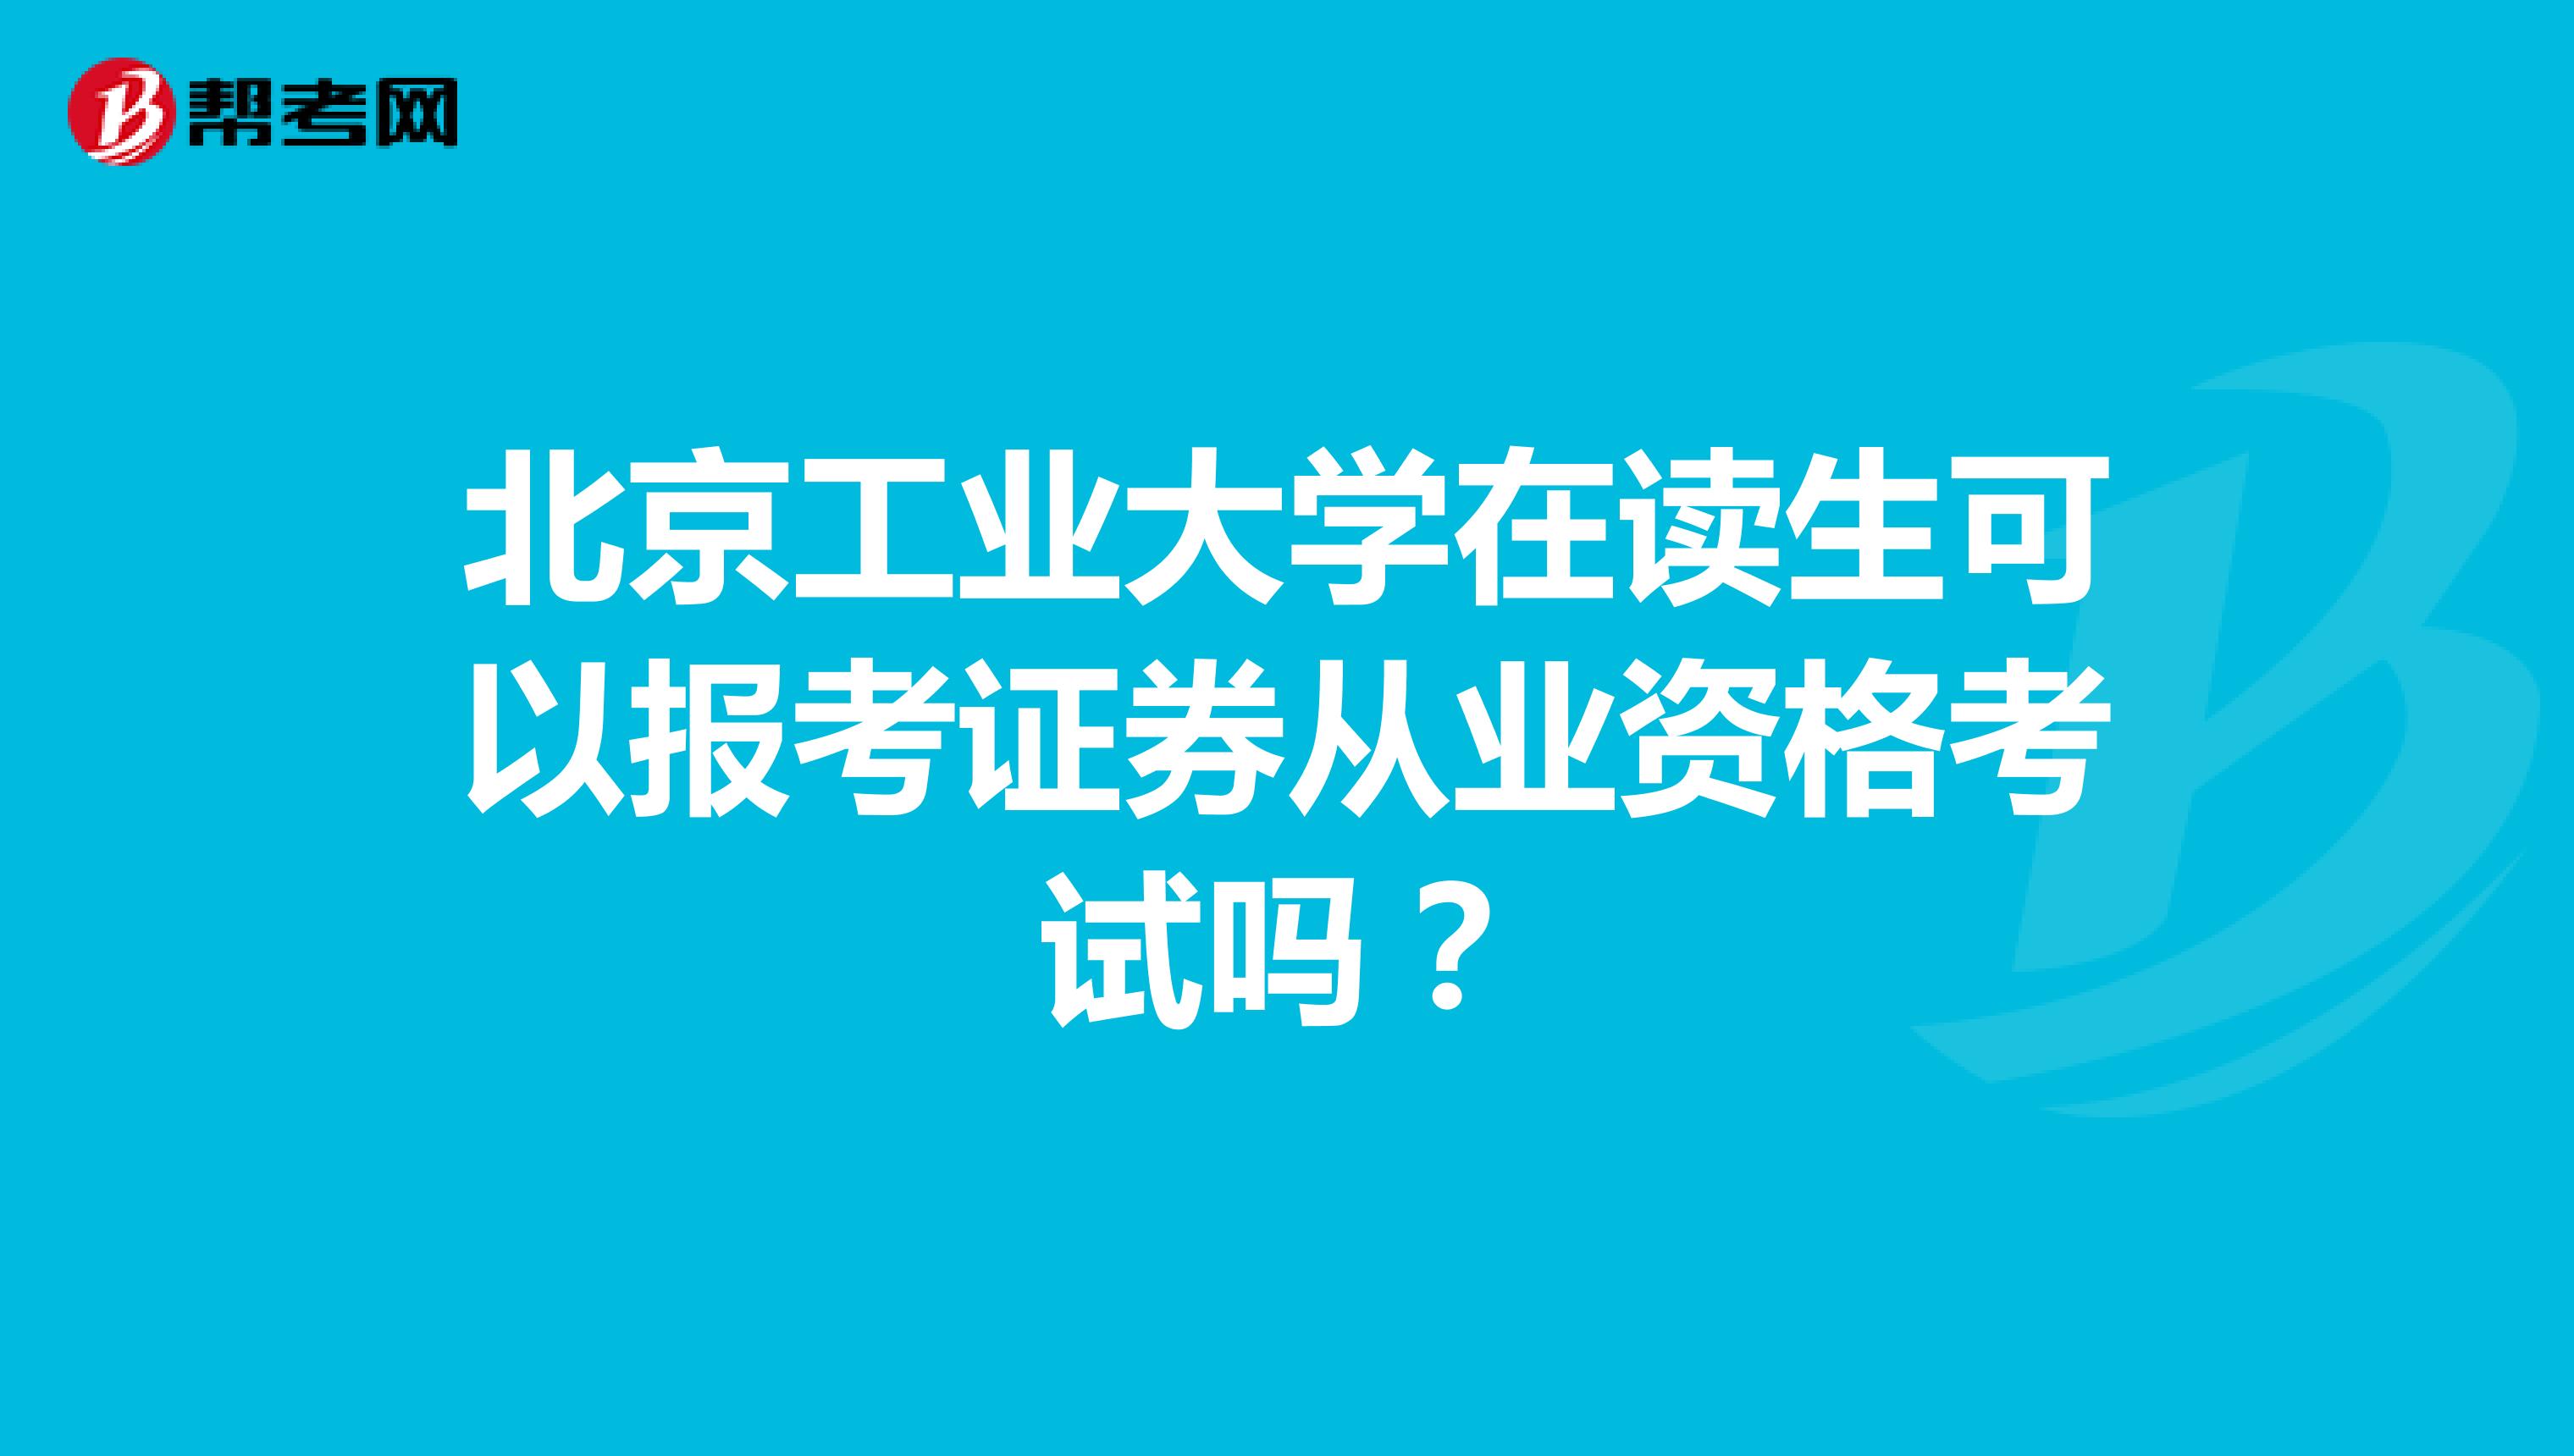 北京工业大学在读生可以报考证券从业资格考试吗？